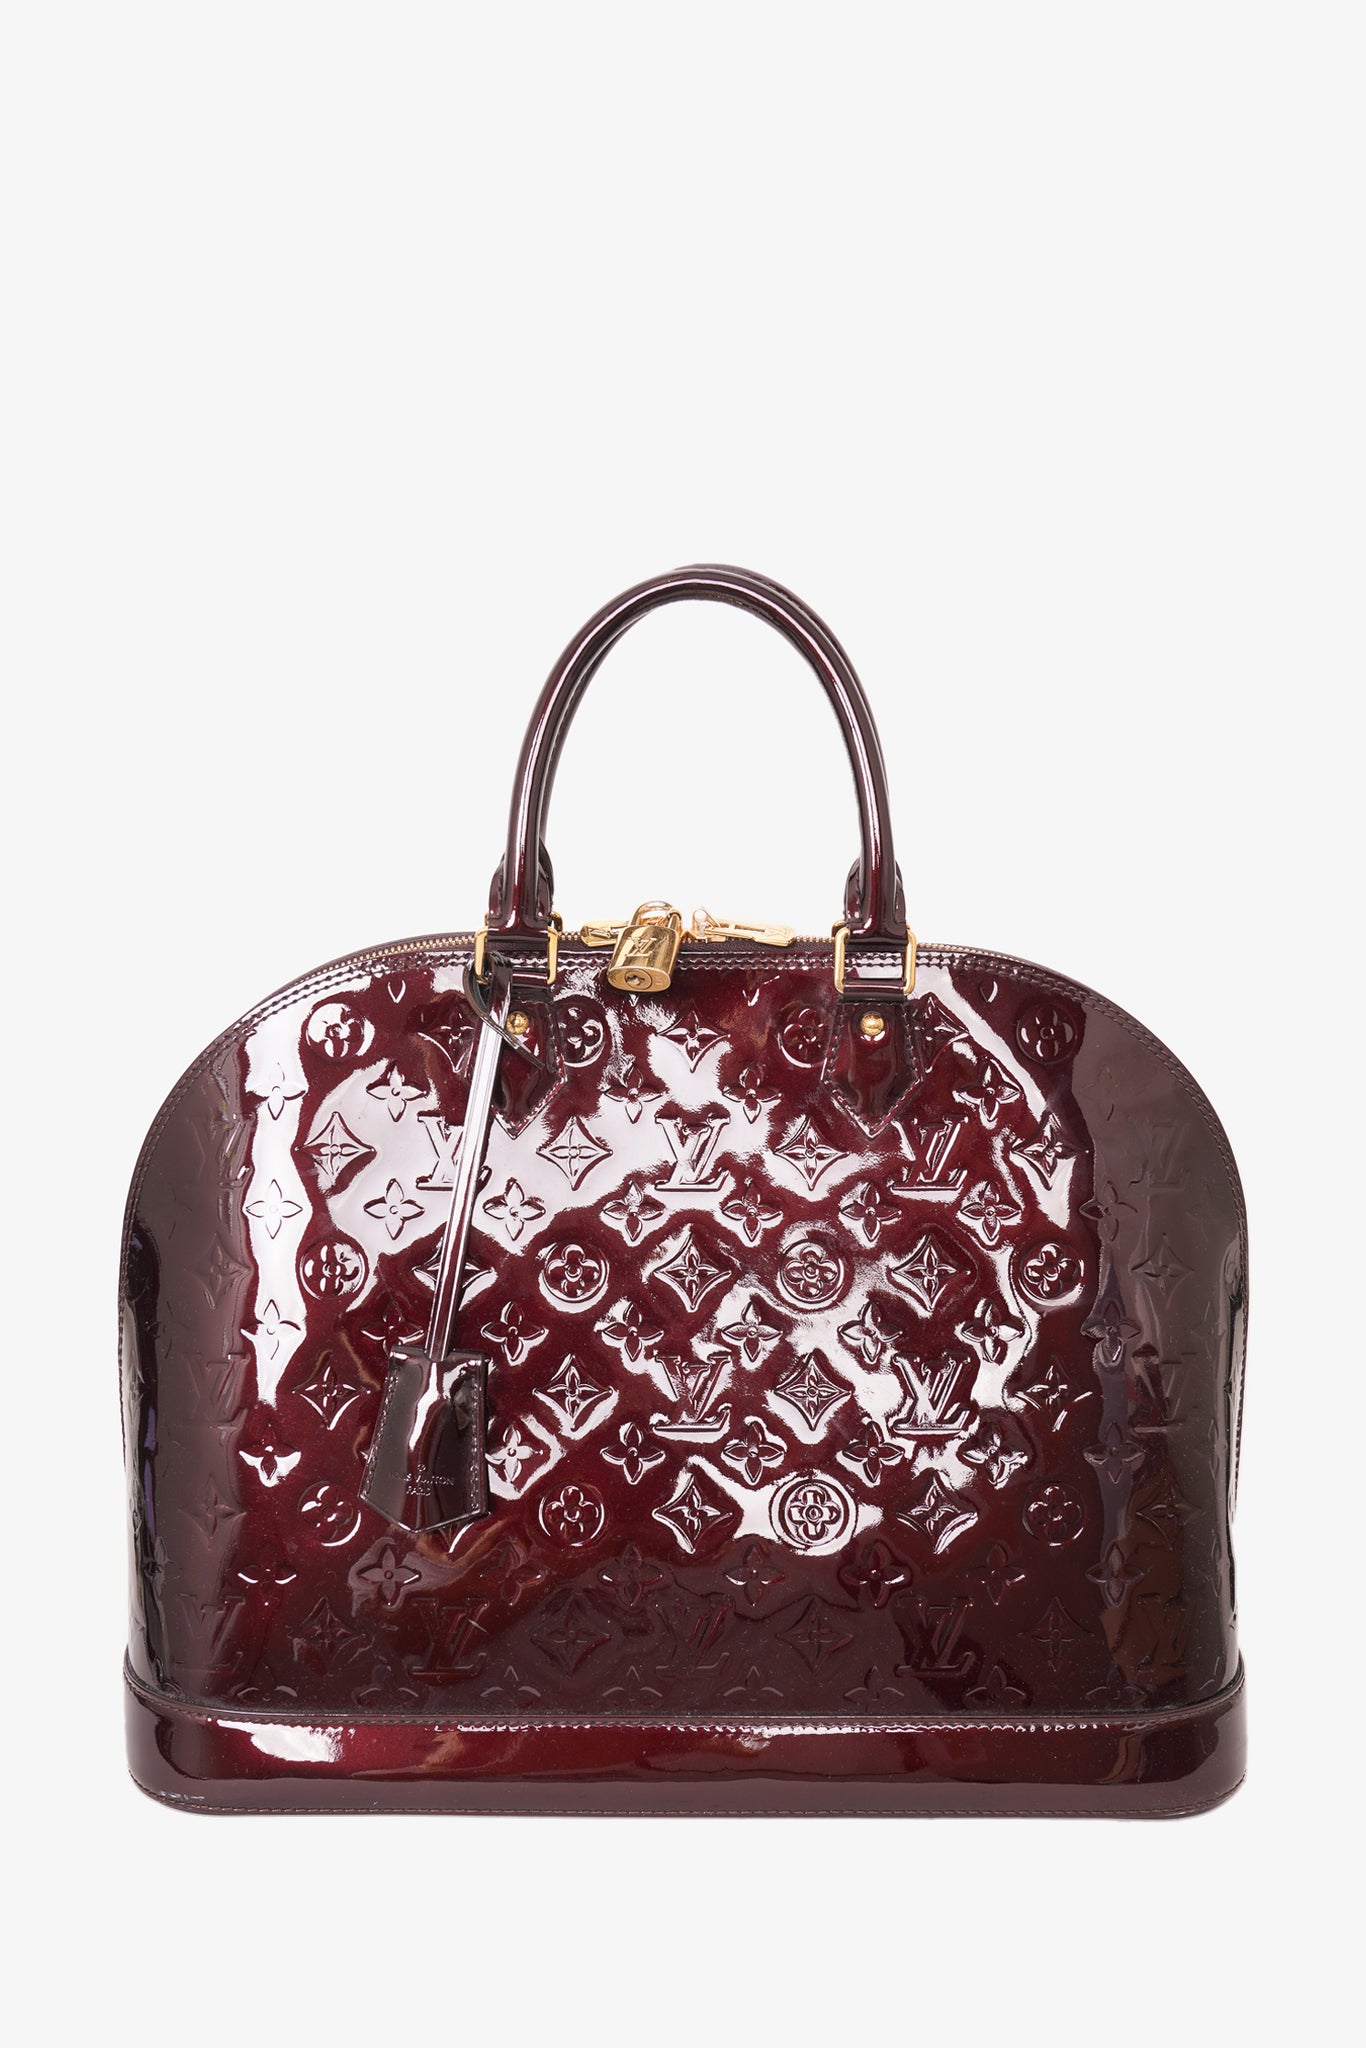 Louis Vuitton 2012 pre-owned Vernis Monogram Deesse PM handbag - ShopStyle  Satchels & Top Handle Bags